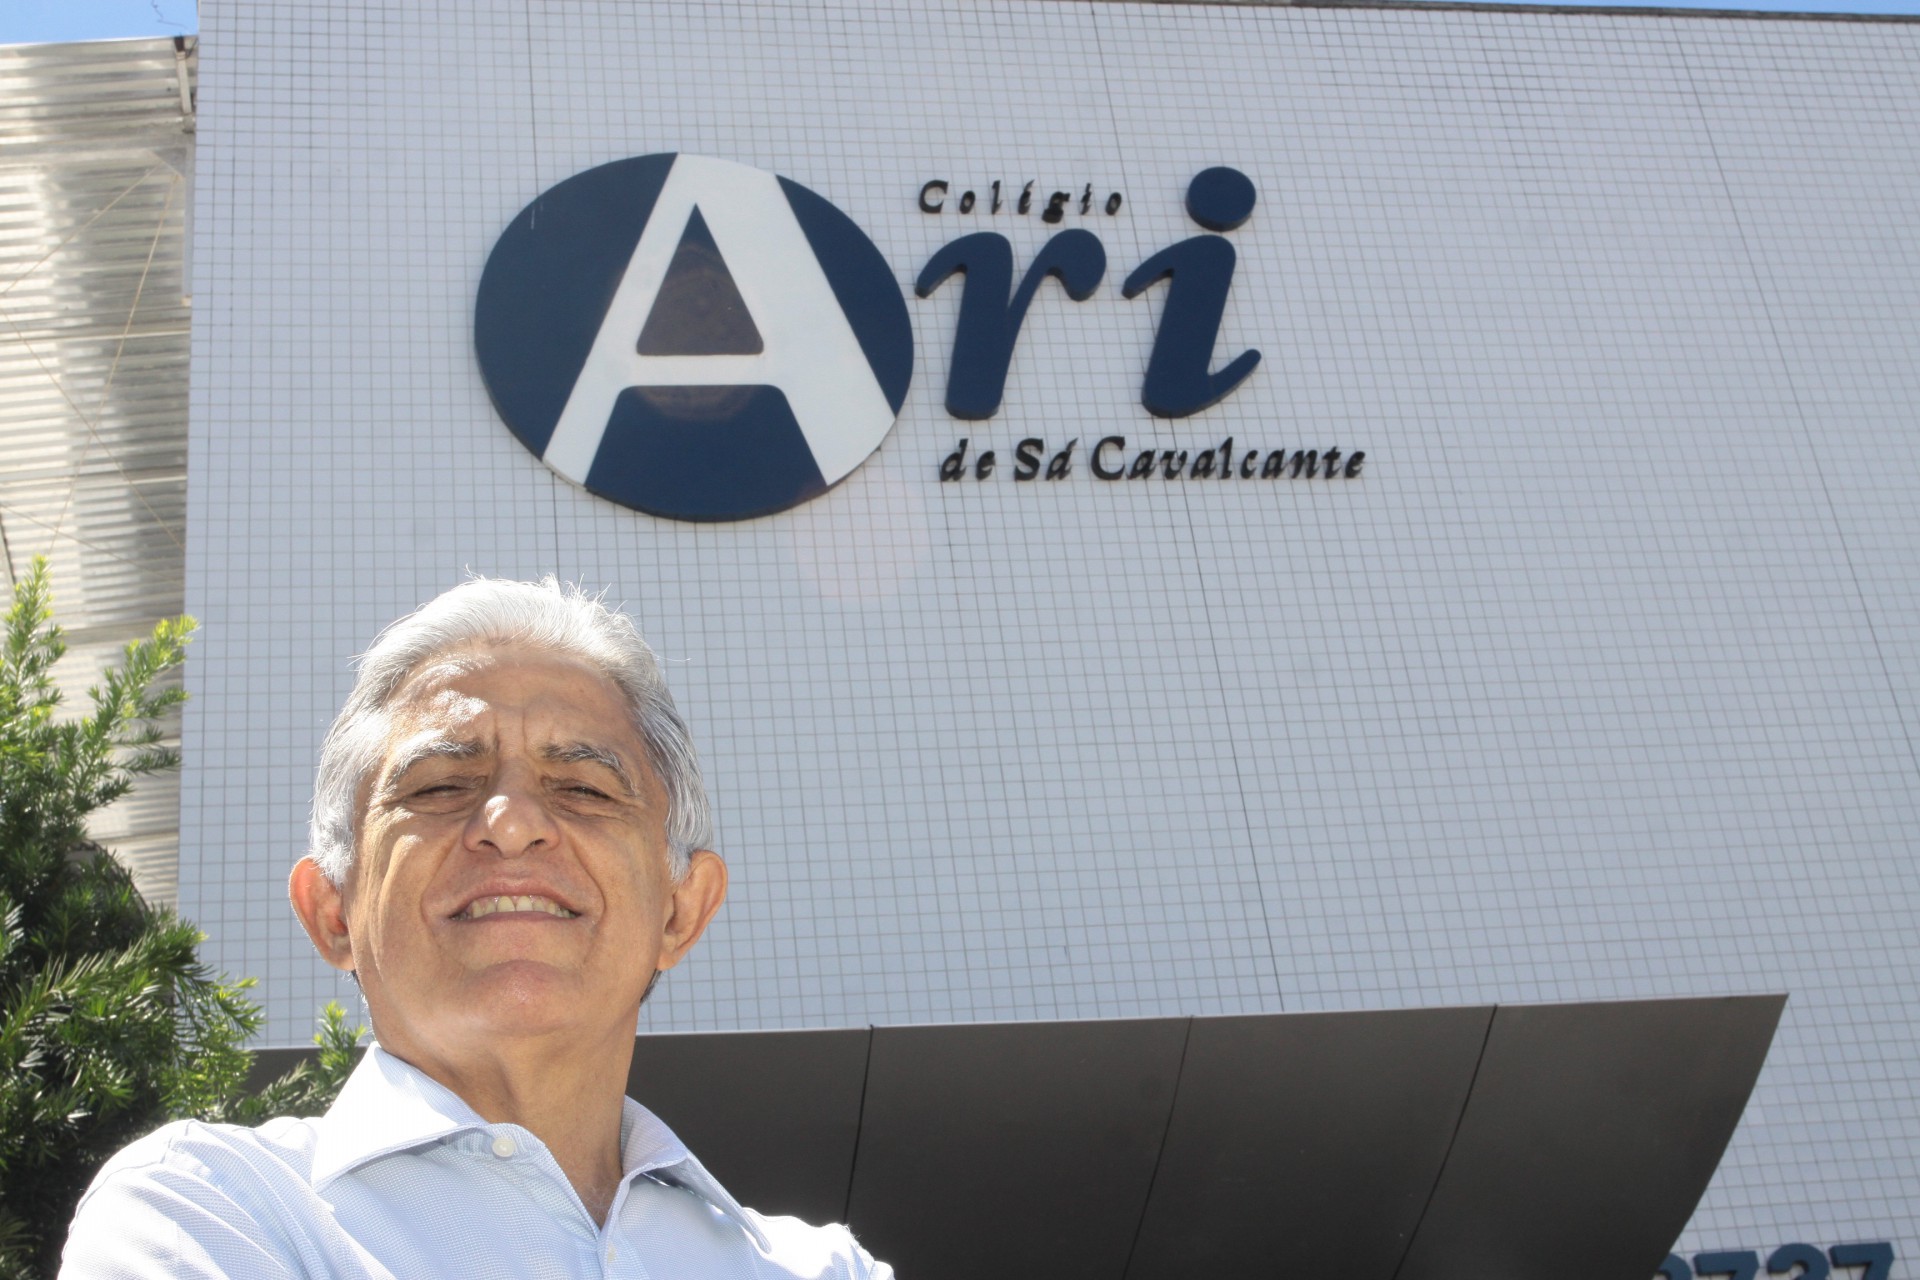 Oto de Sá Cavalcante, diretor-presidente do grupo Ari de Sá (Foto:  Mauri Melo, em 27/07/2012)